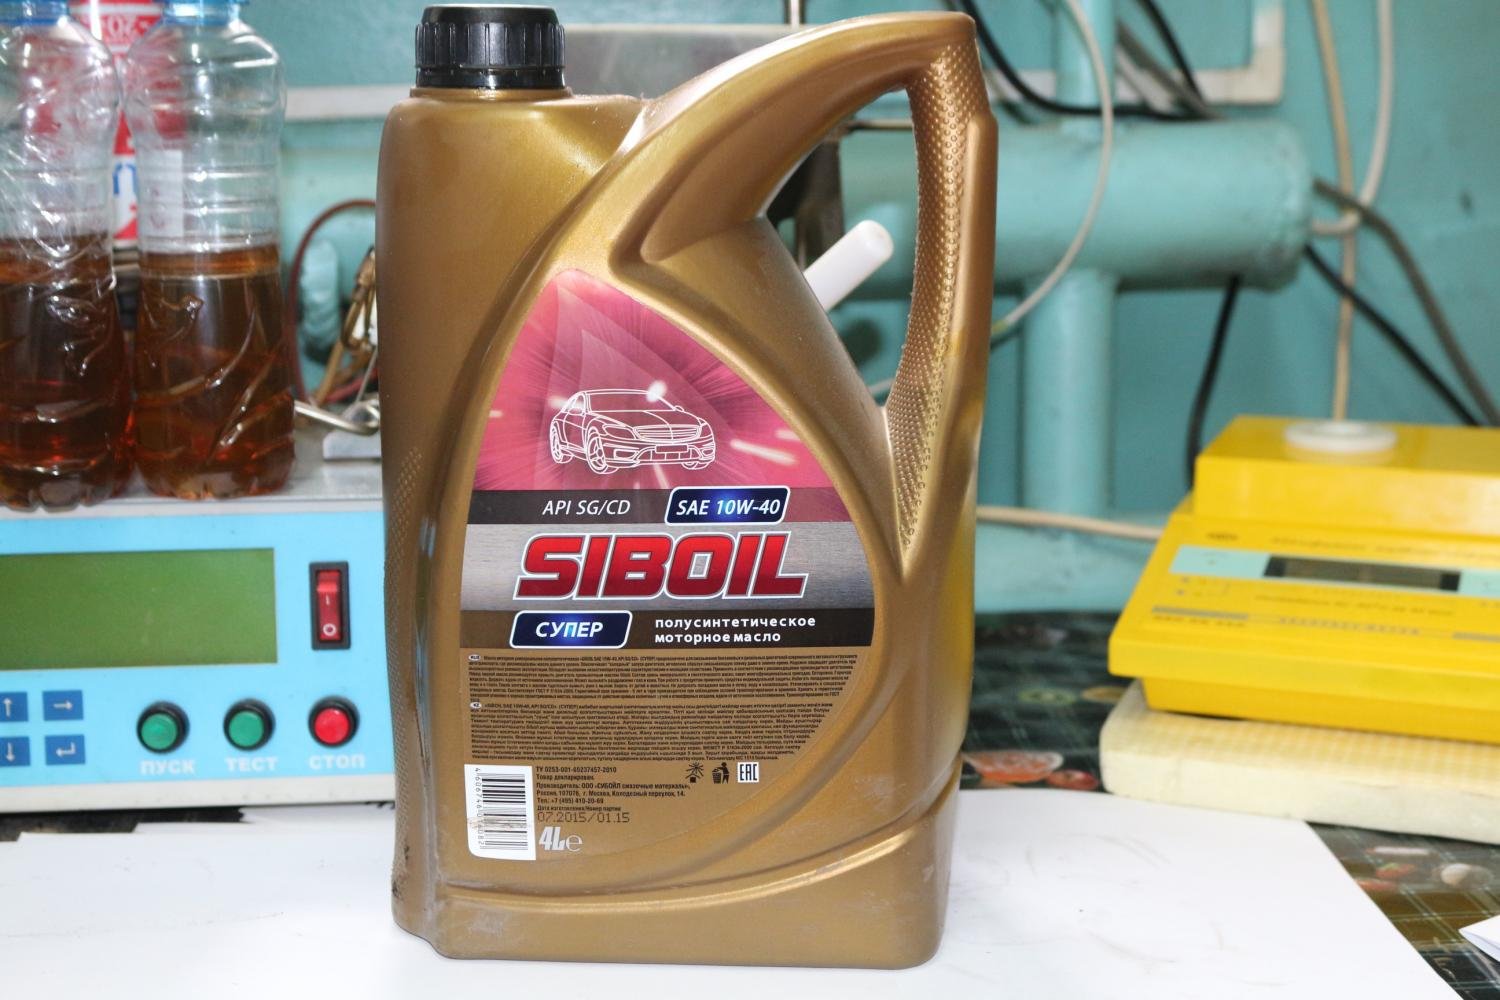 Моторное масло полусинтетика 5w40 отзывы. Моторное масло Siboil супер SAE 10w 40. Масло моторное полусинтетическое Siboil супер 5w40 API SG/CD, 4л. Моторное масло Siboil 5w 40 полусинтетика. Siboil 5w40 платинум.